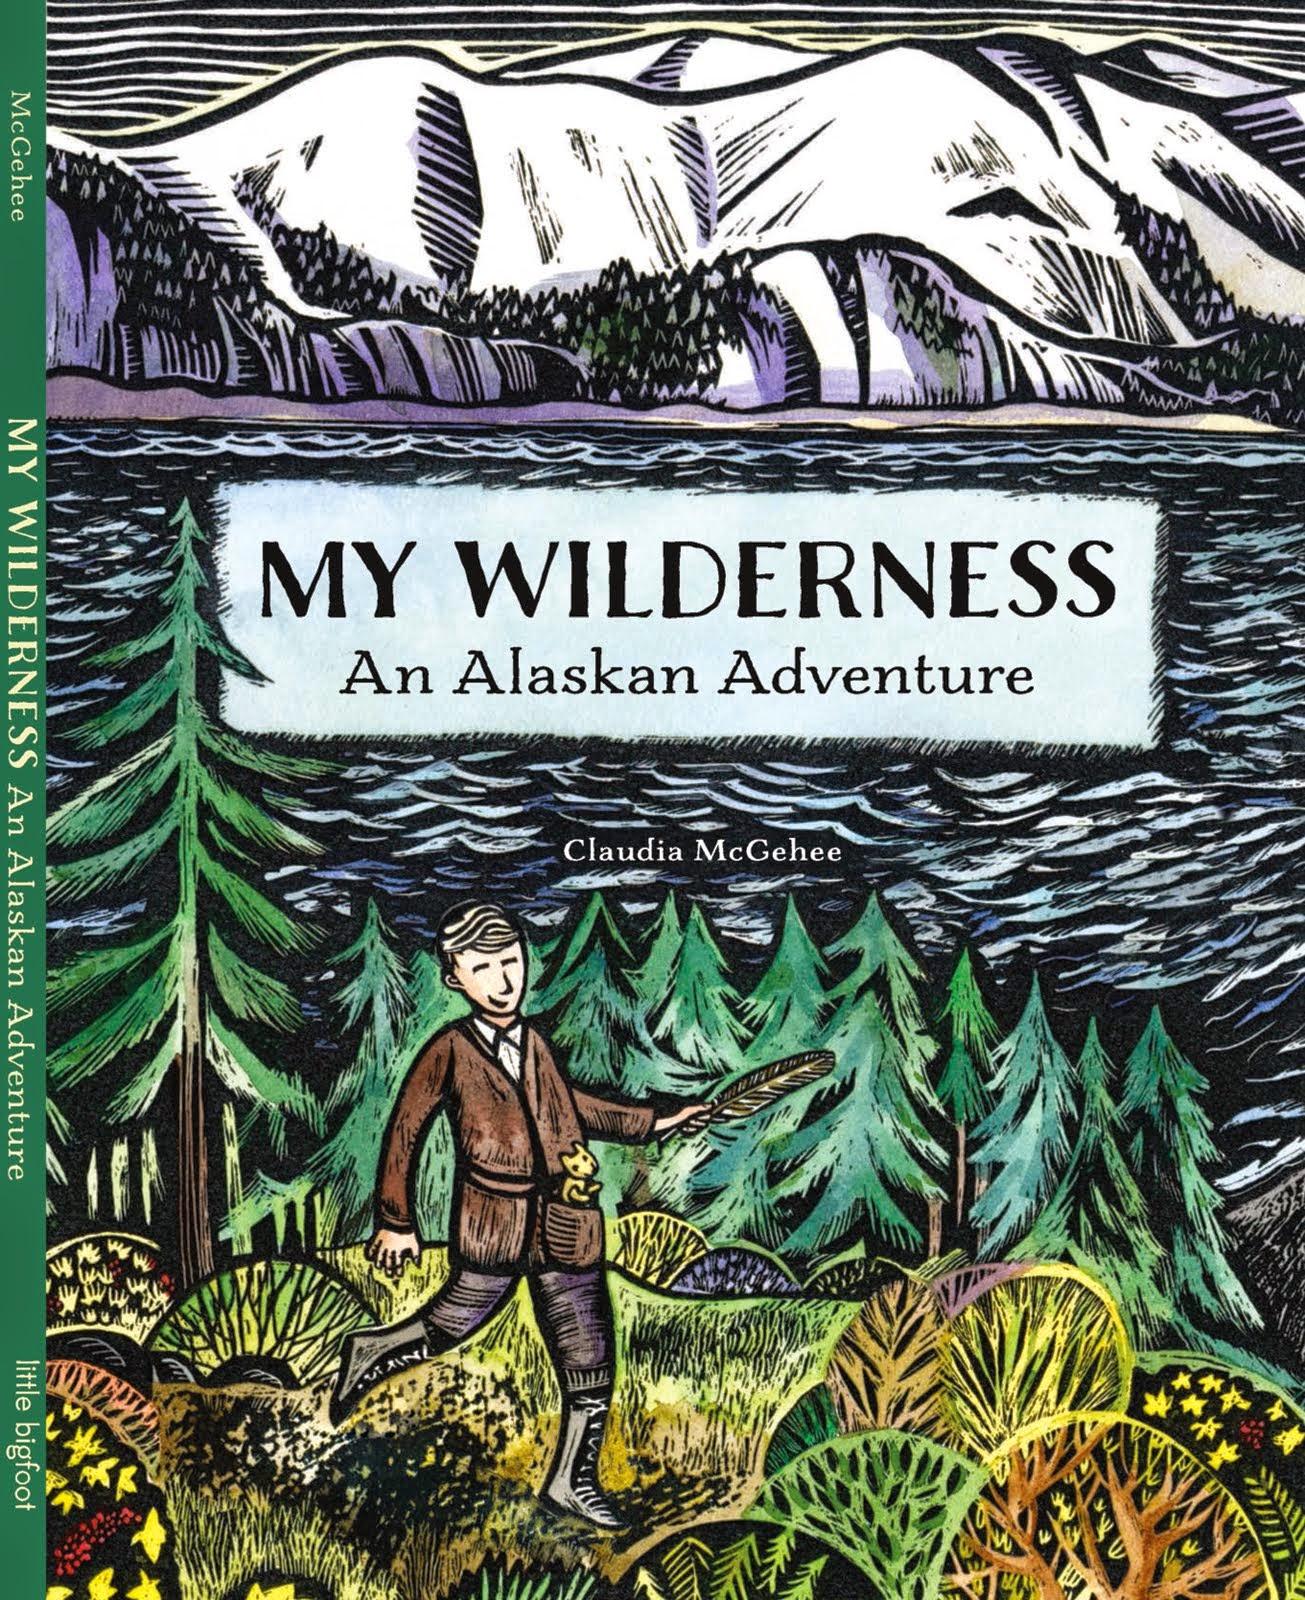 My Wilderness: An Alaskan Adventure